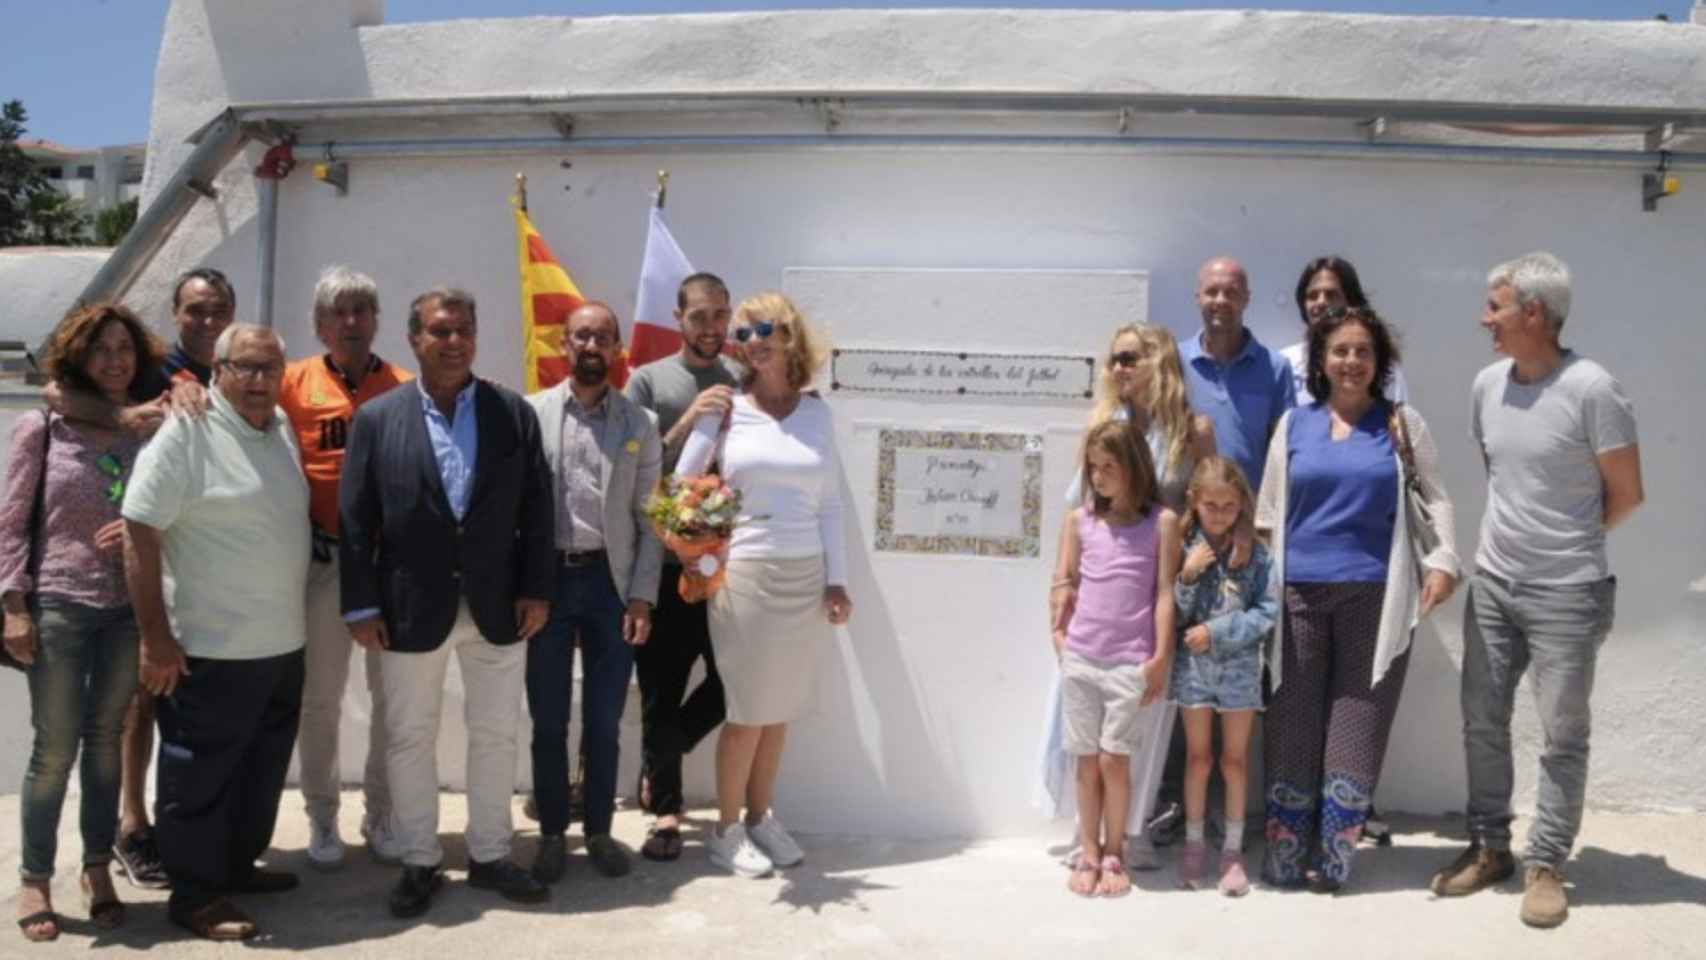 Una foto de la familia de Johan Cruyff  y Joan Laporta en la inauguración de la placa al exfutbolista